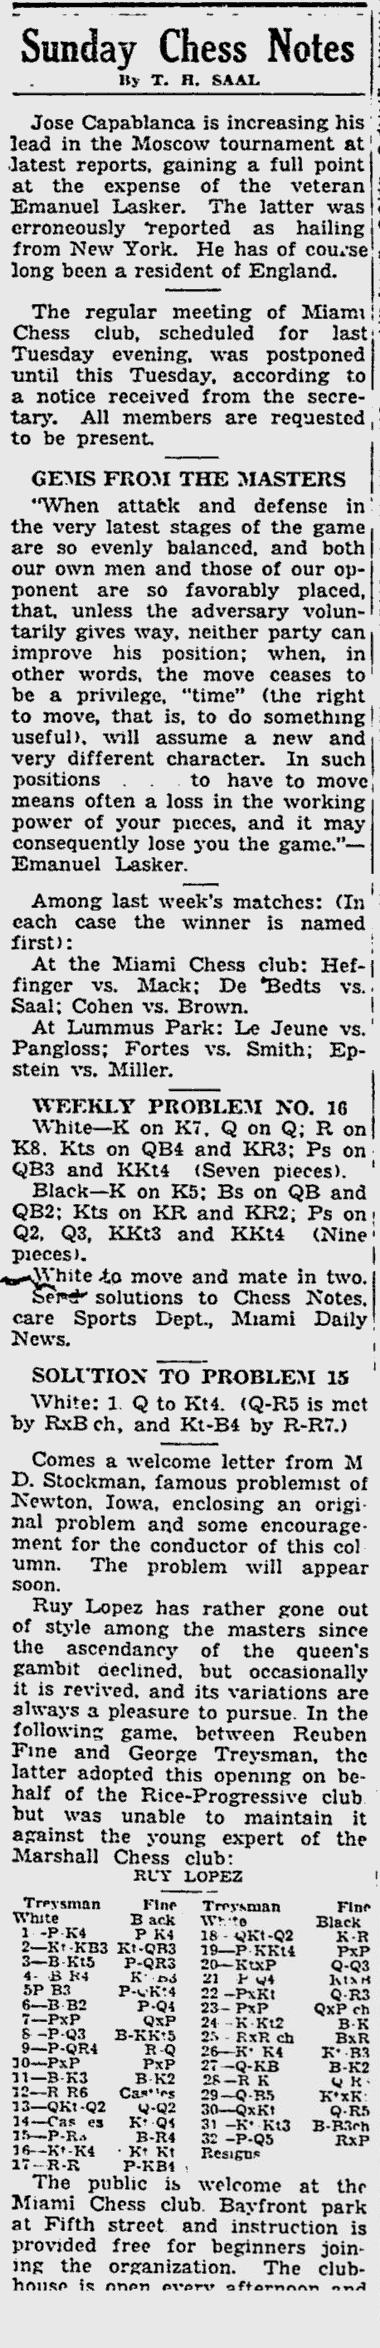 1936.06.07-01 Miami Daily News.jpg